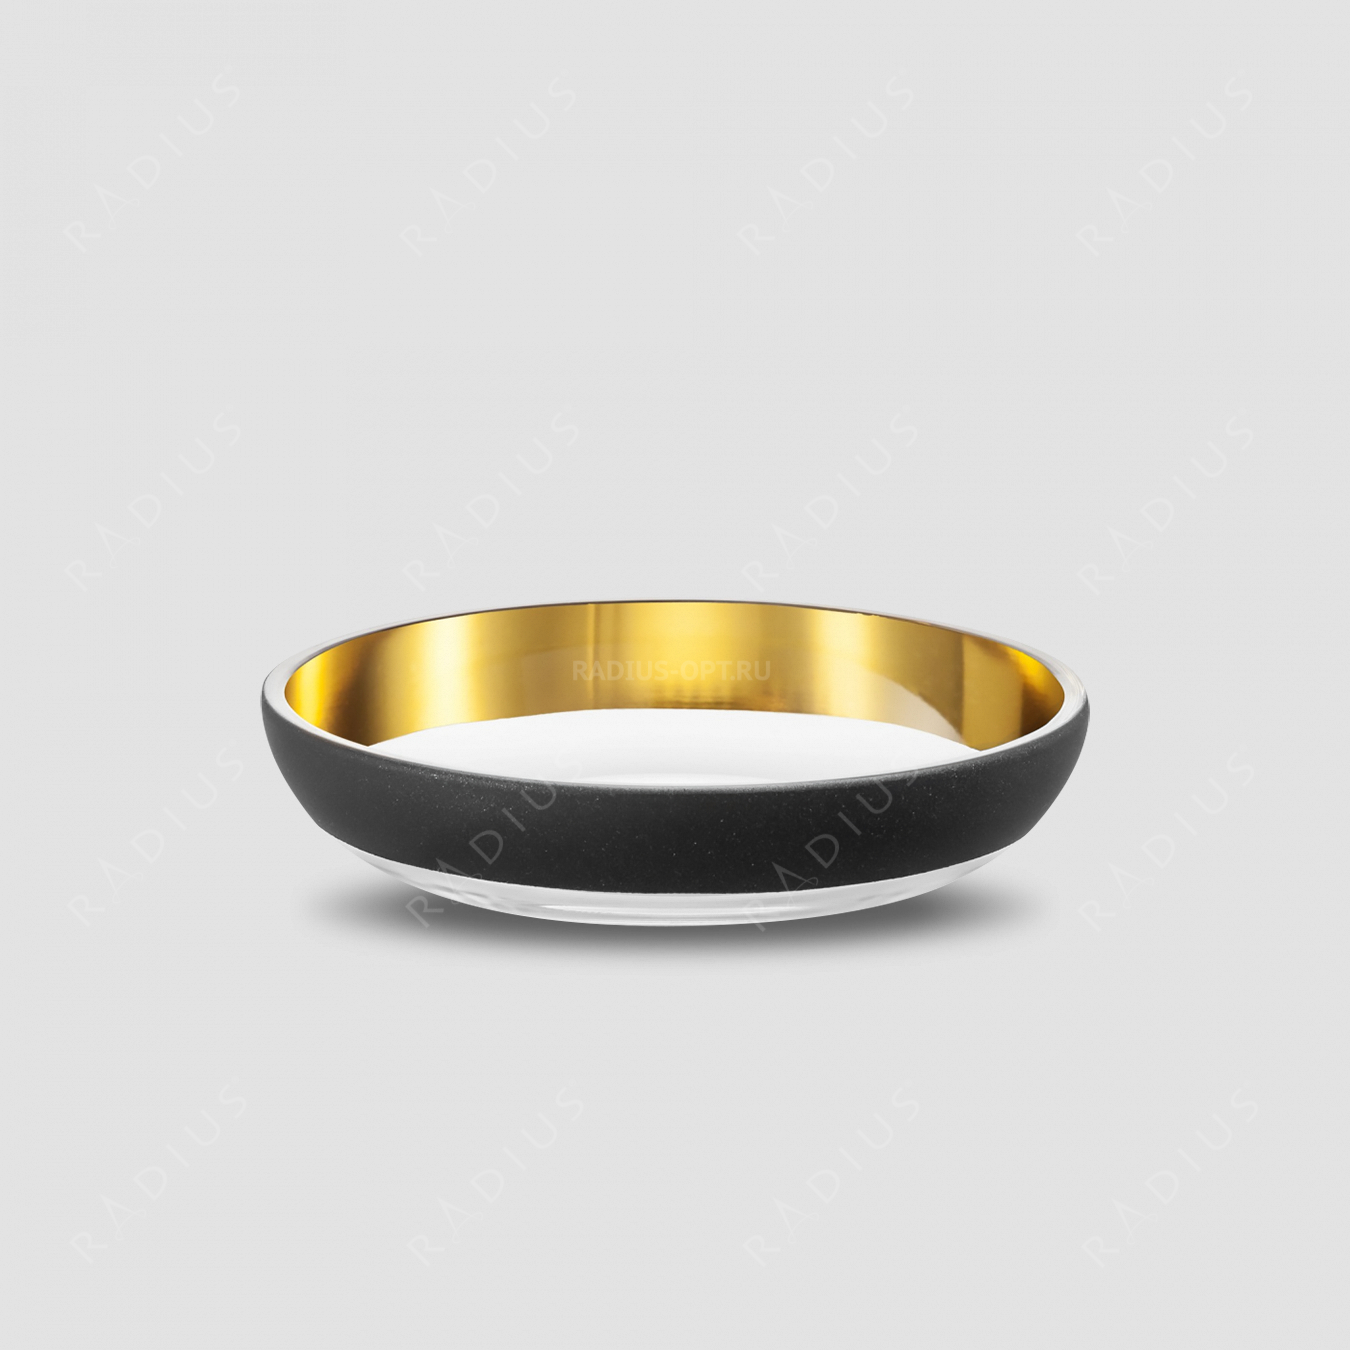 Чаша Gold, диаметр: 17 см, материал: бессвинцовый хрусталь, цвет: черный/золото, серия Cosmo, EISCH, Германия